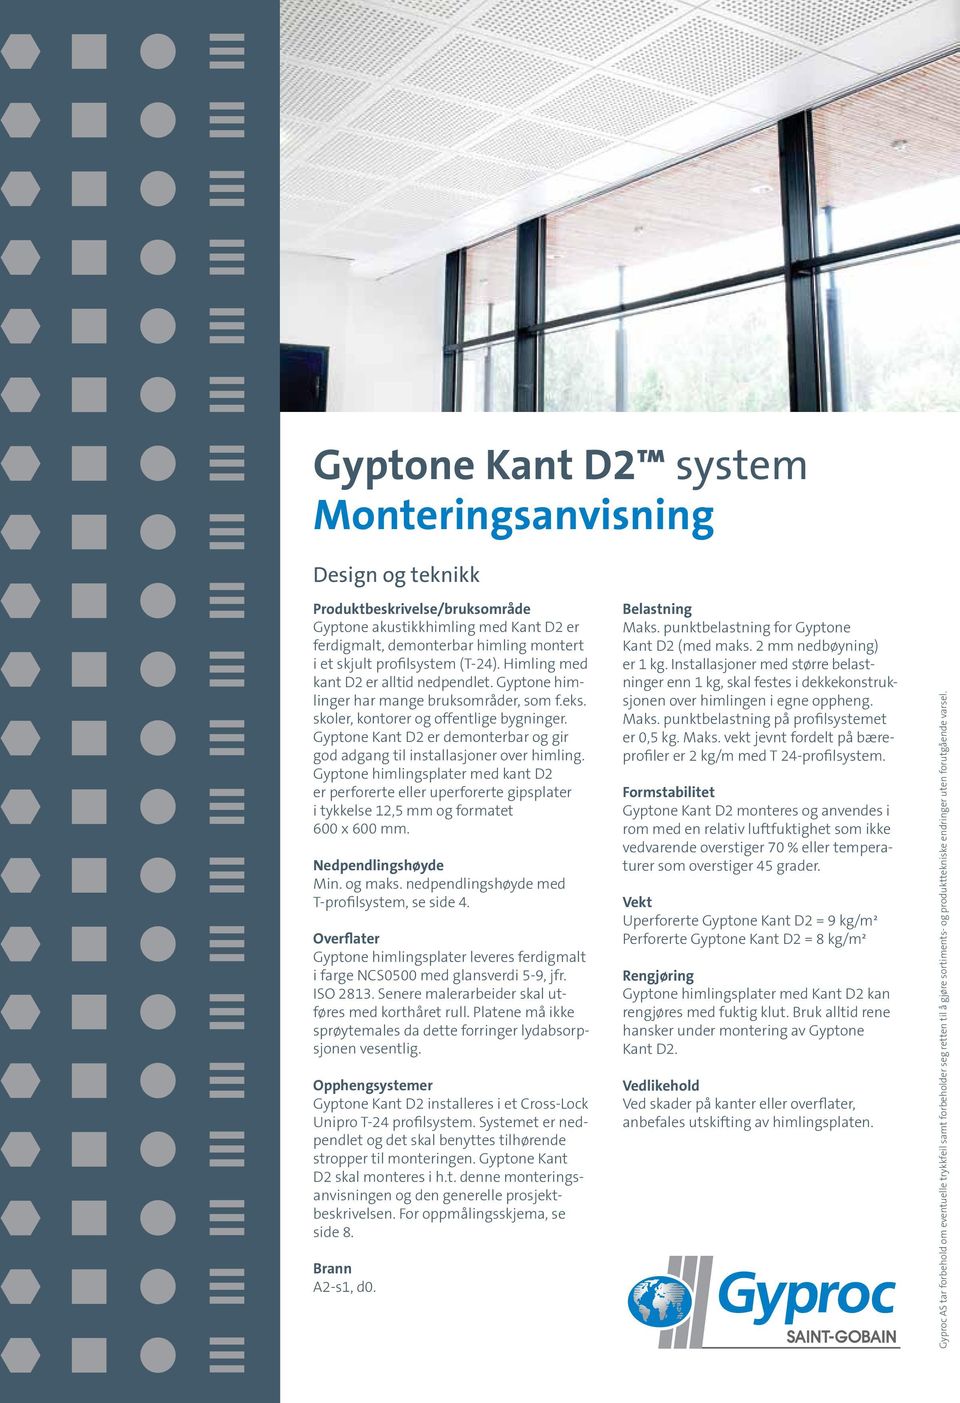 Gyptone Kant D2 er demonterbar og gir god adgang til installasjoner over himling.